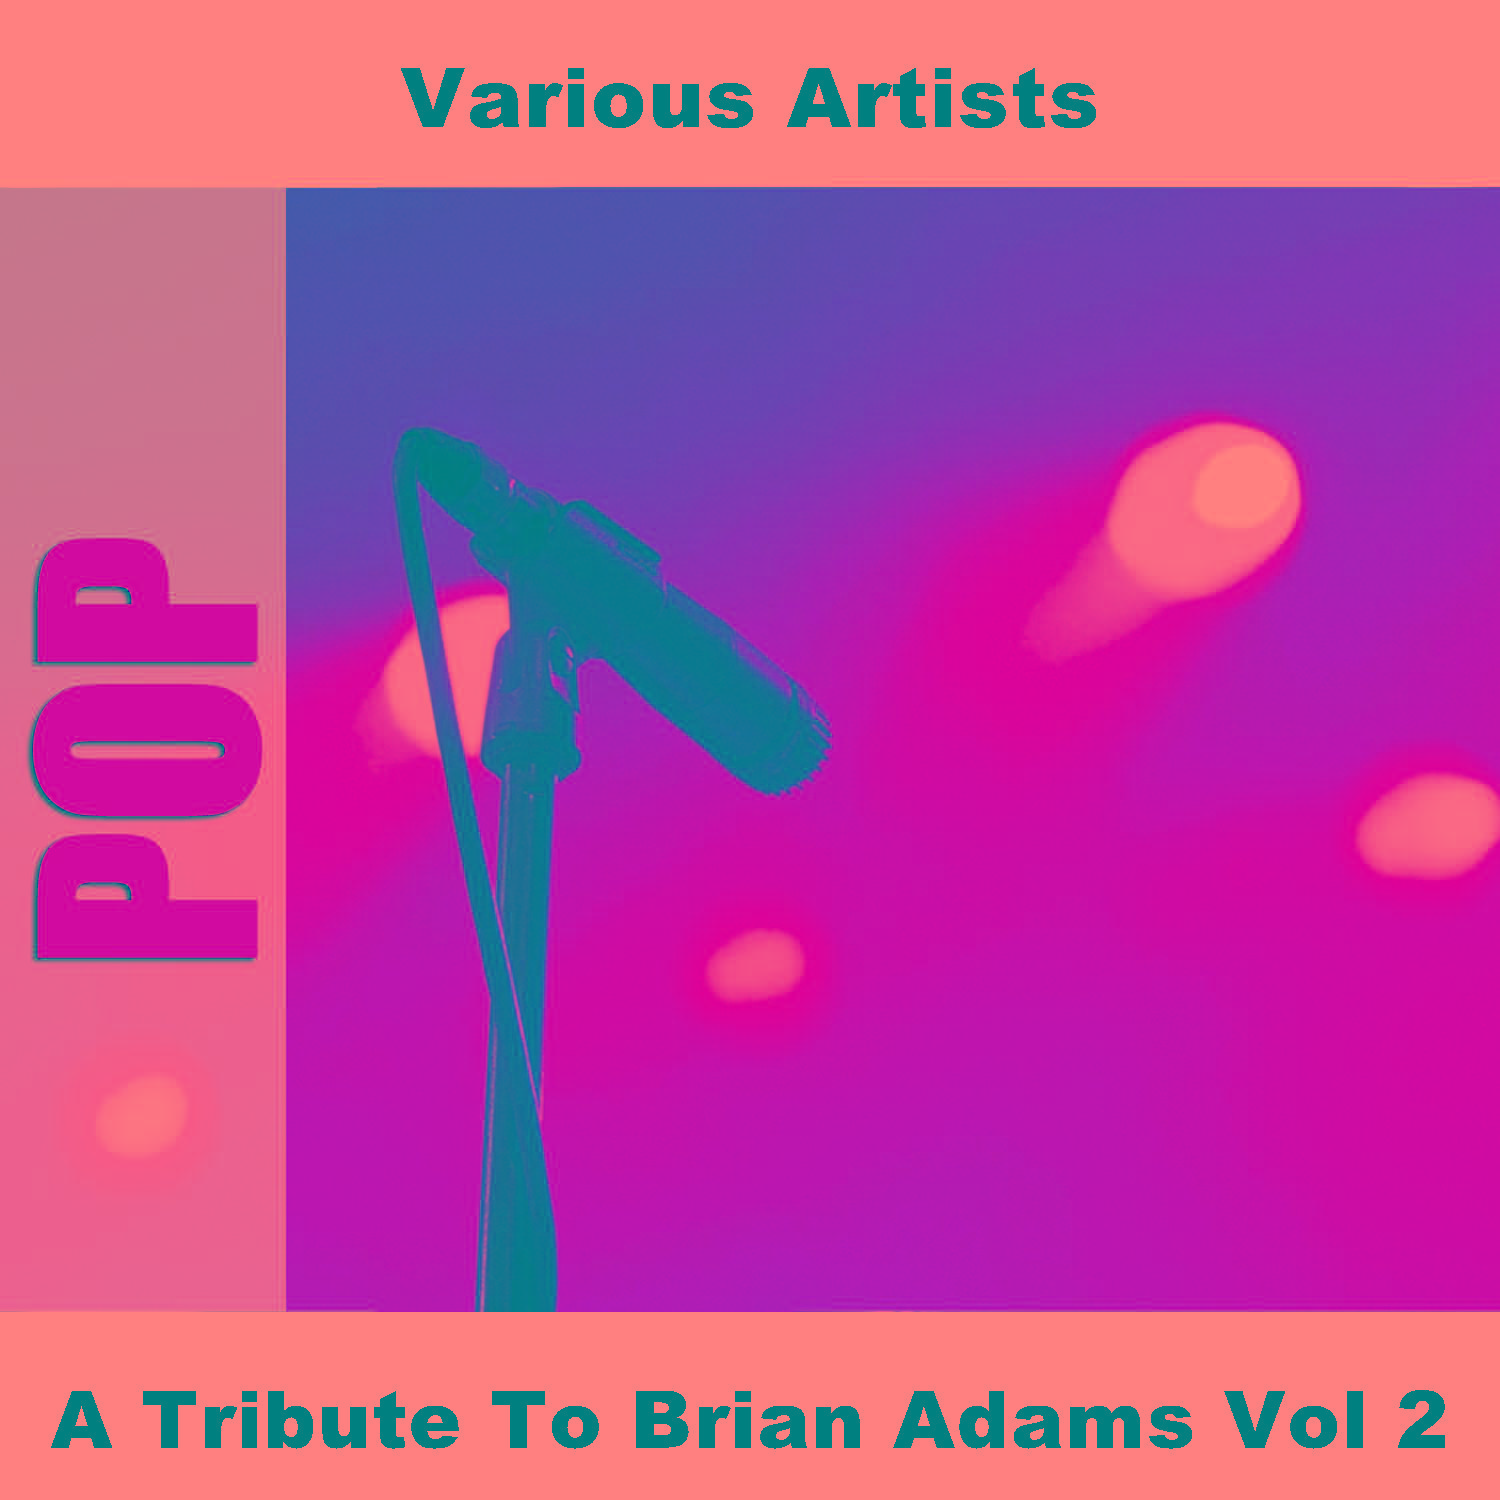 A Tribute To Brian Adams Vol 2